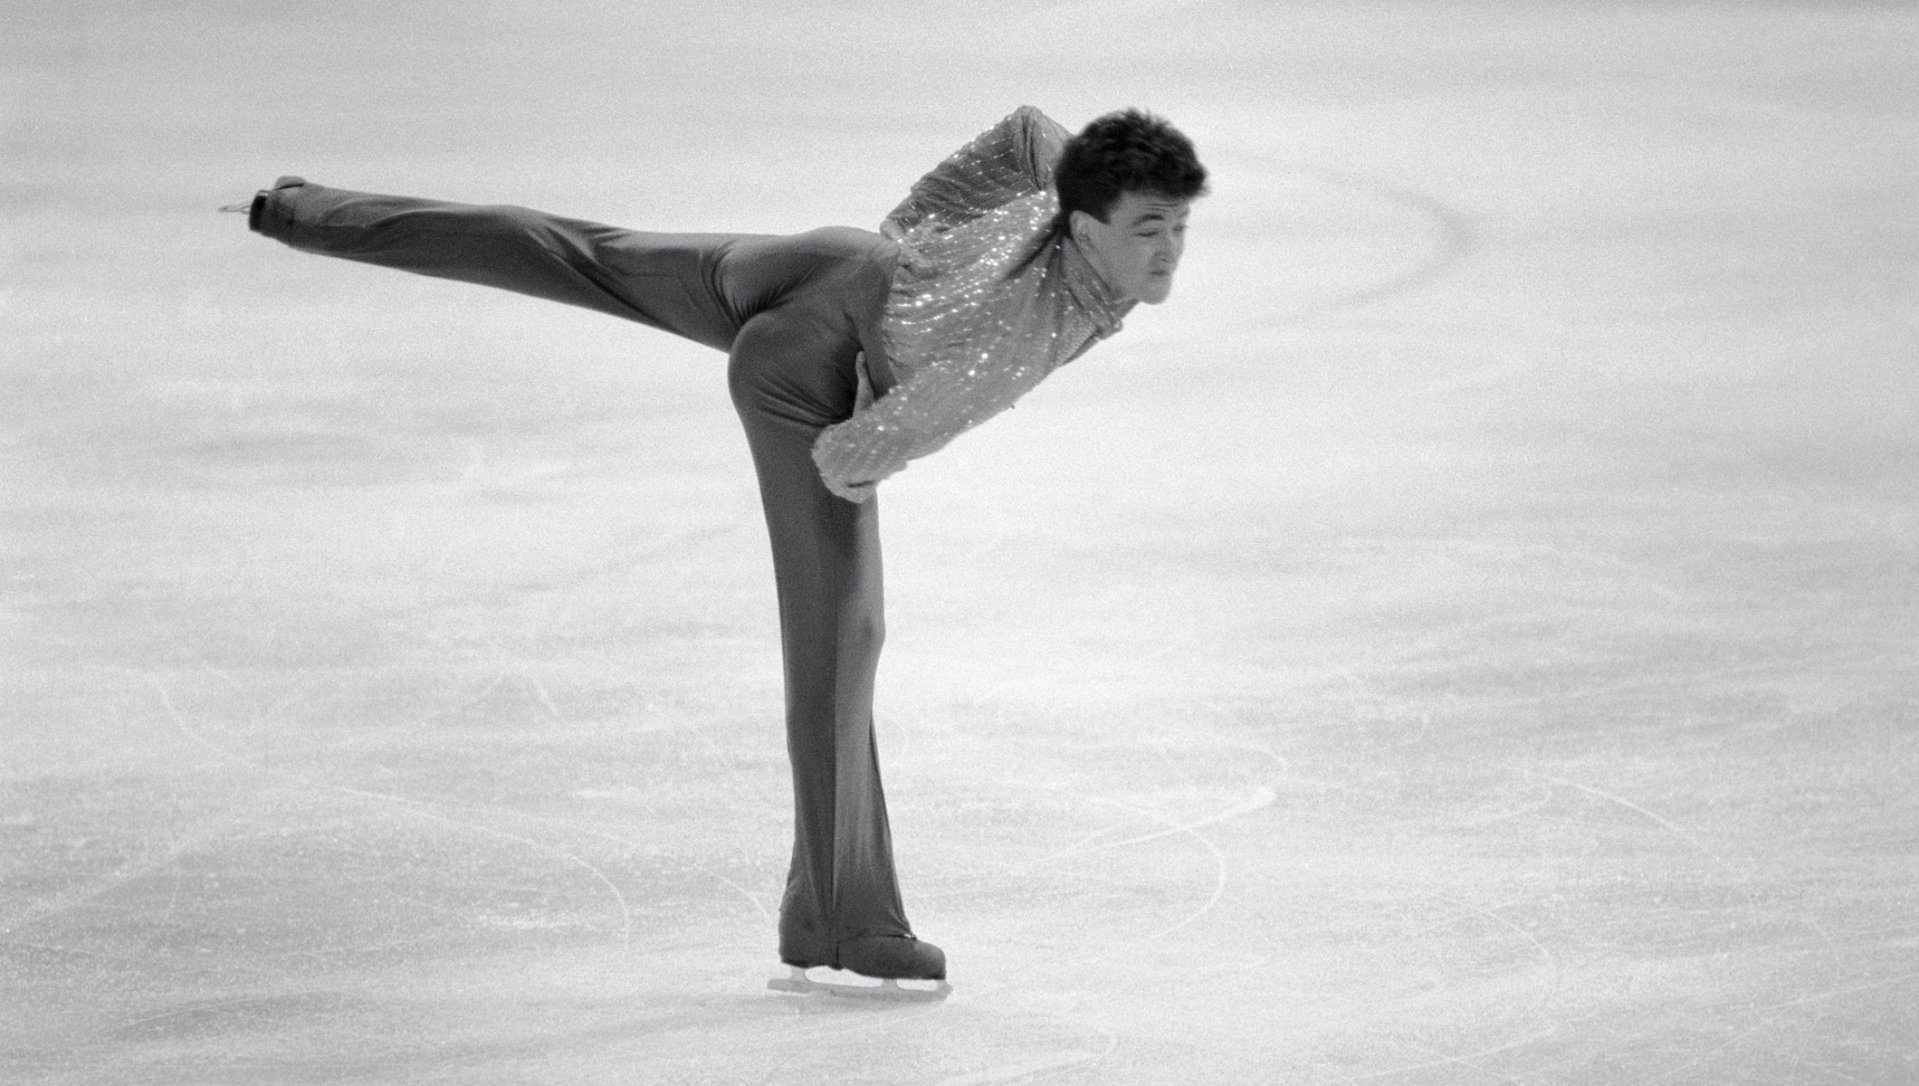 America's Brian Boitano in the 1988 Winter Olympics in Calgary